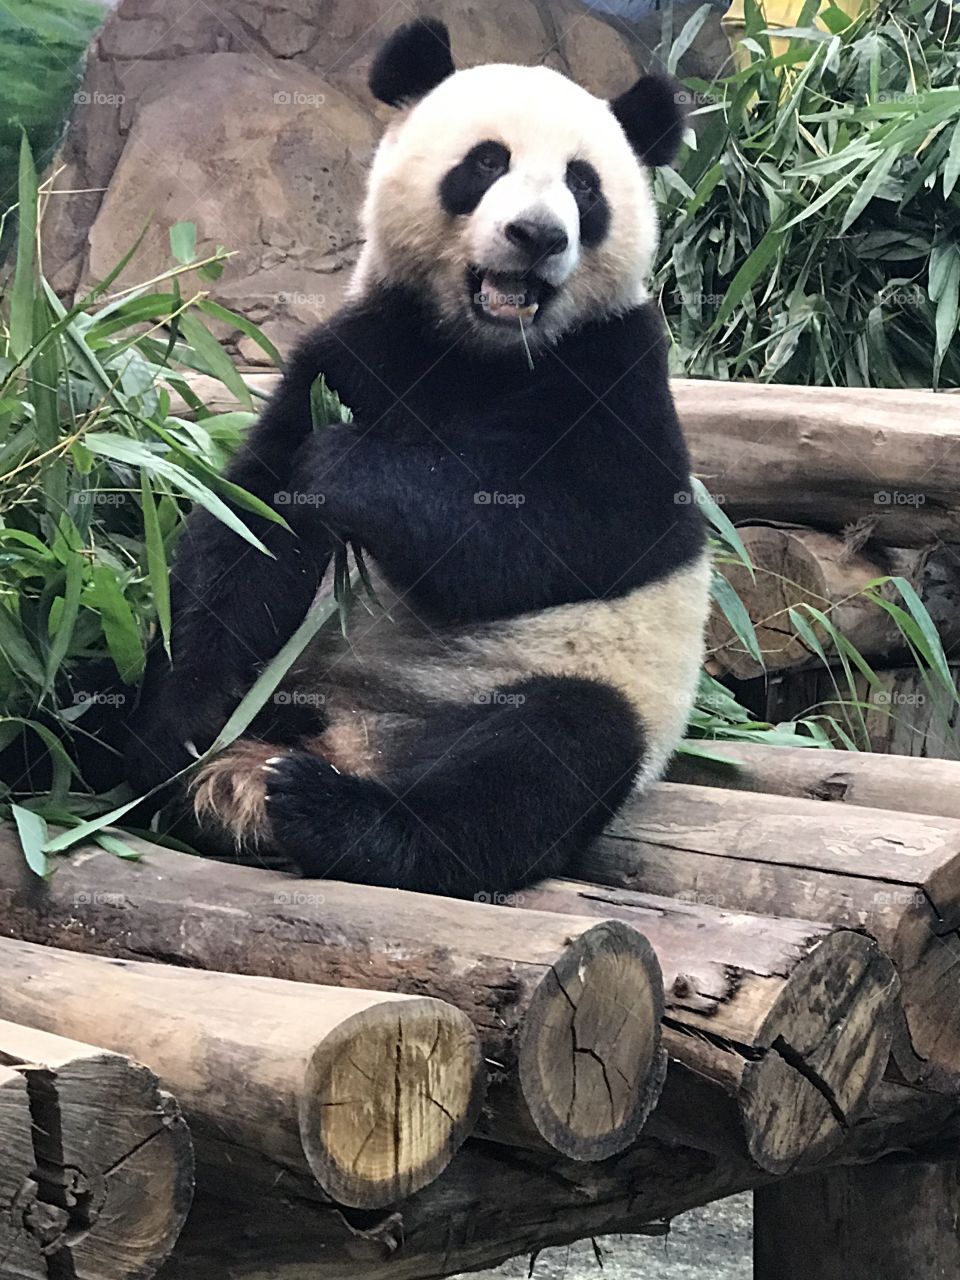 Panda at Chimelong safari park